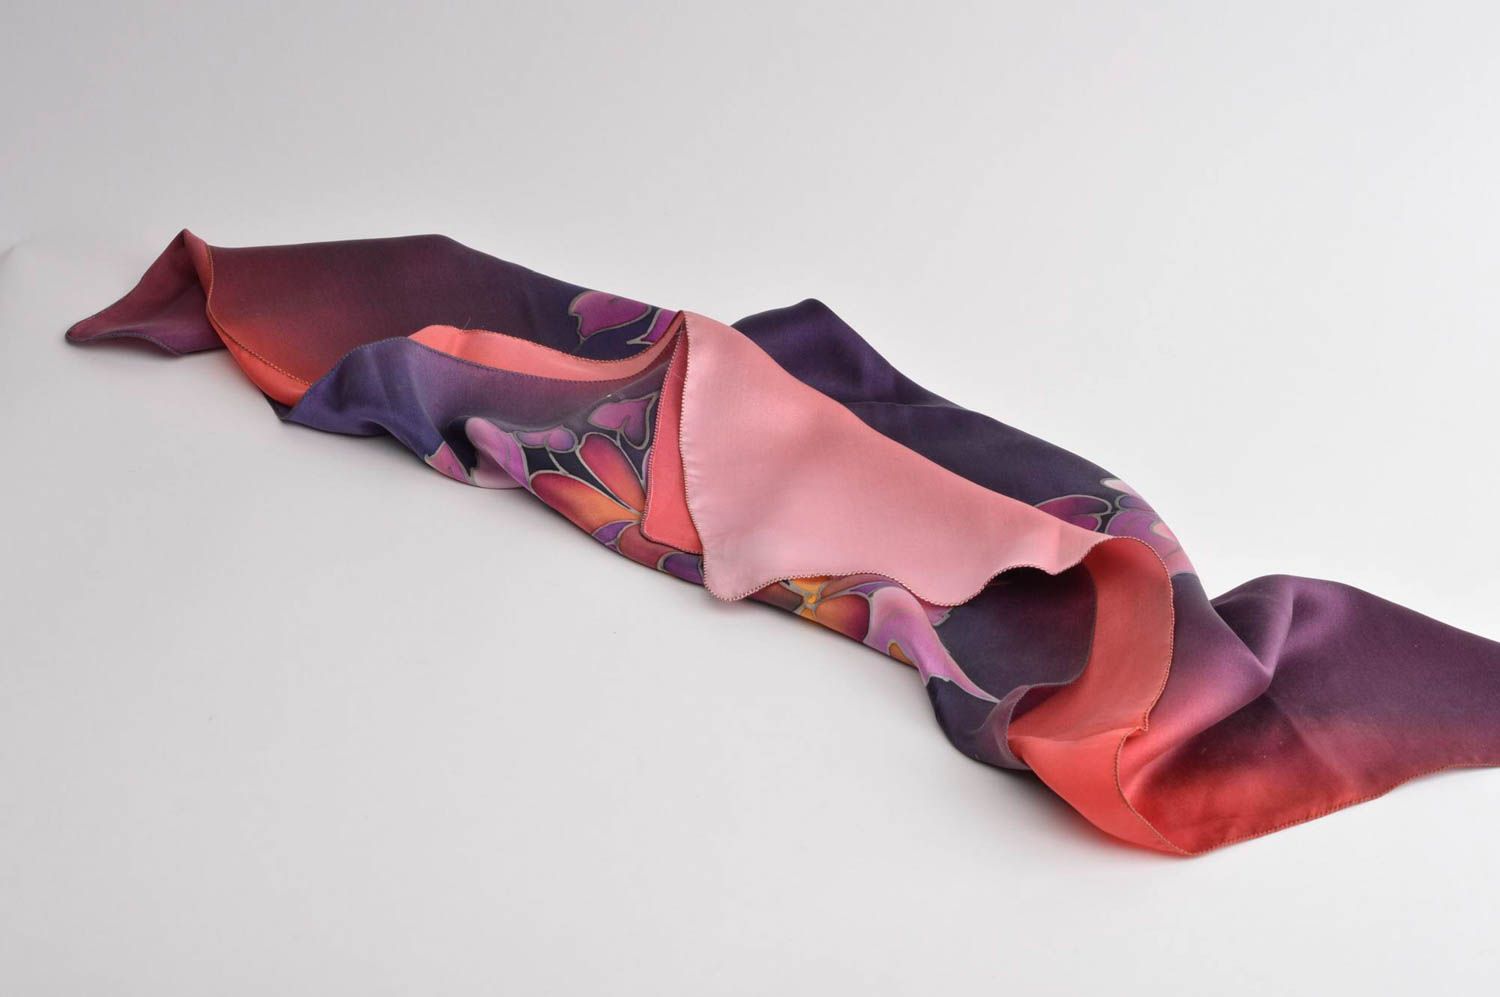 Красочный платок ручной работы платок из шелка оригинальный платок с цветочками фото 2